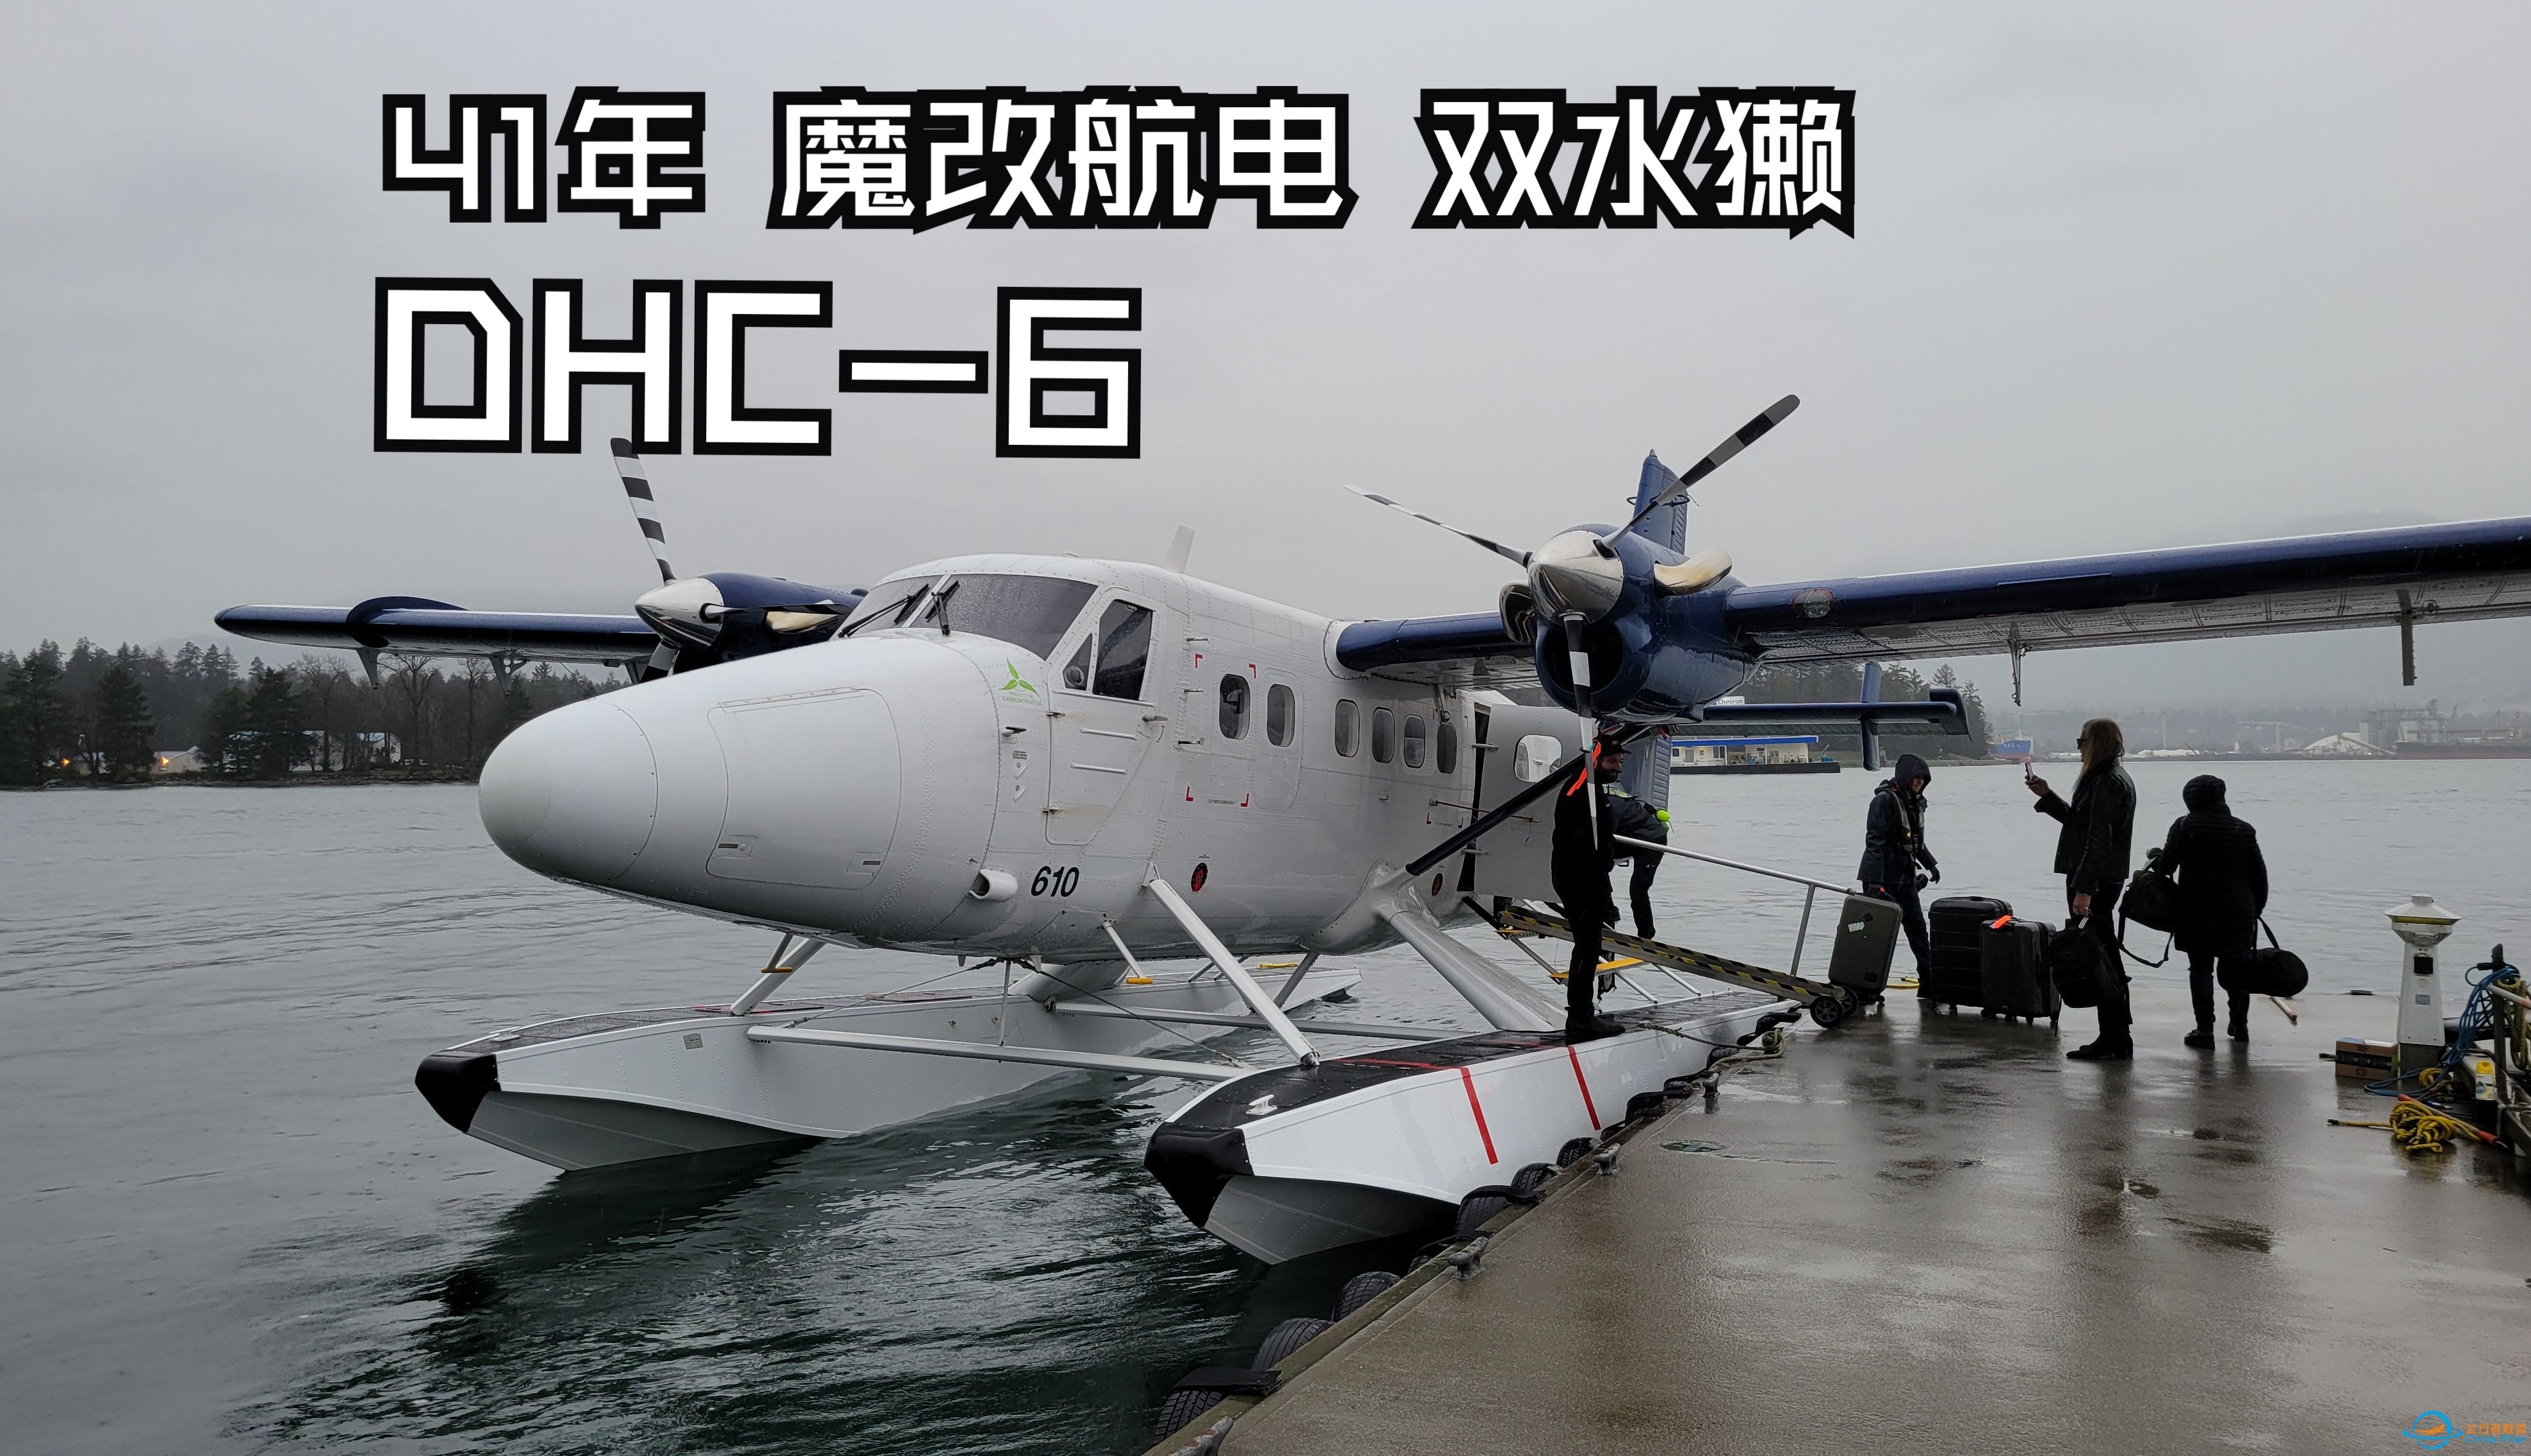 【飞行游记】41年的魔改老飞机？海港航空DHC-6双水獭水上飞机飞行体验-6107 